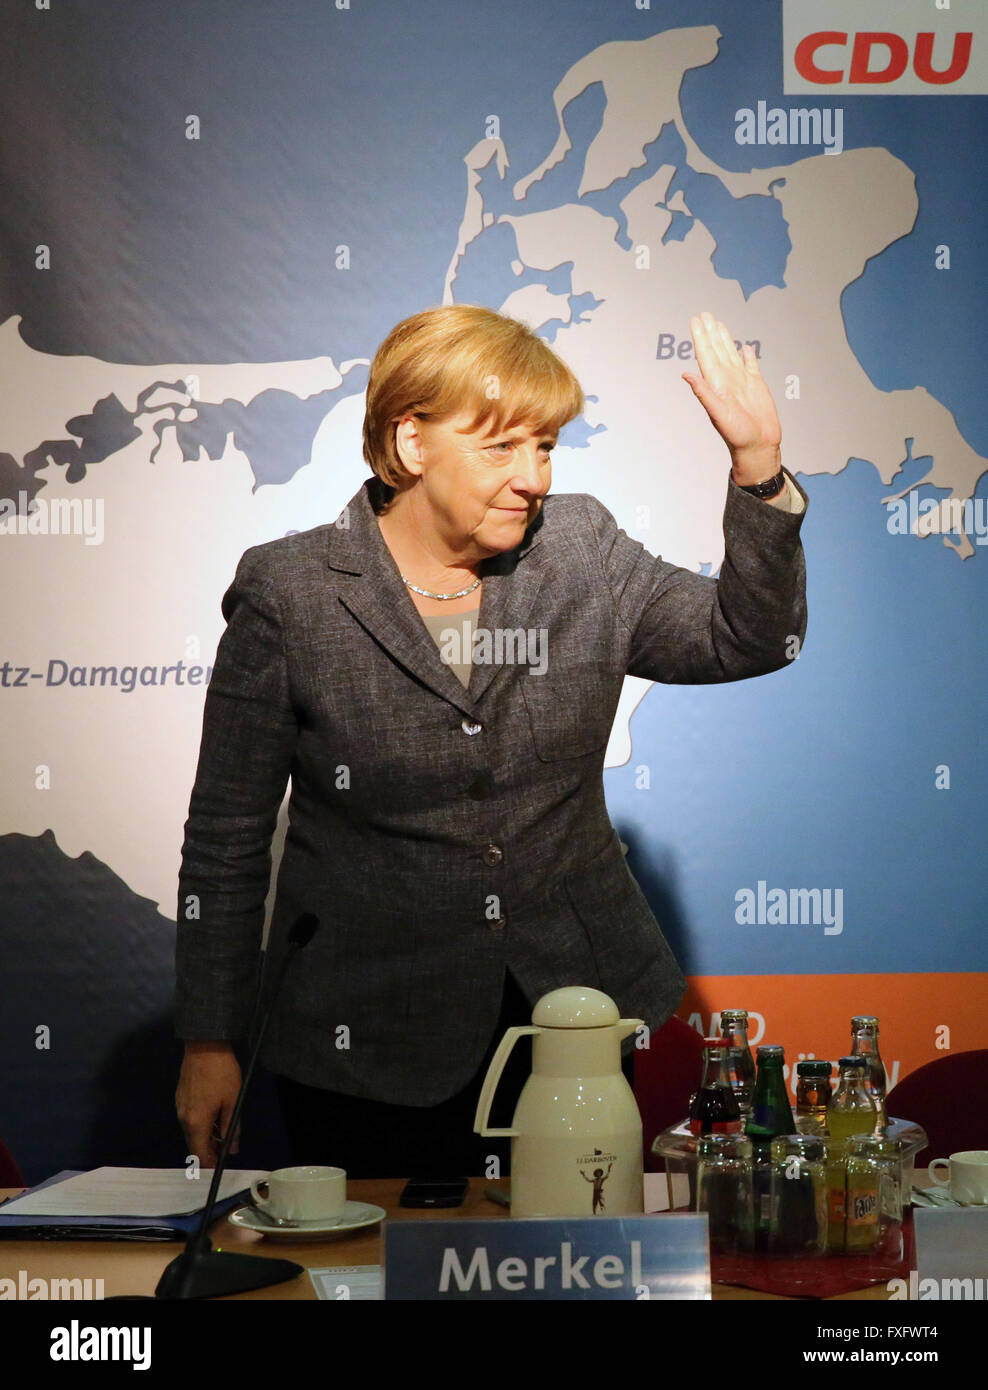 Bundeskanzlerin Angela Merkel (CDU) besucht die lokale CDU-Organisation der Grimmener in ihrer Wahl Region Vorpommern-Rügen, um über ihre Flüchtlingspolitik, Grimmener, Deutschland, 15. April 2016 zu sprechen. Die lokale Organisation in einem Brief an Merkel am Ende des Jahres 2015 über Ängste gegenüber der Integration von Flüchtlingen. Foto: BERND WUESTNECK/dpa Stockfoto